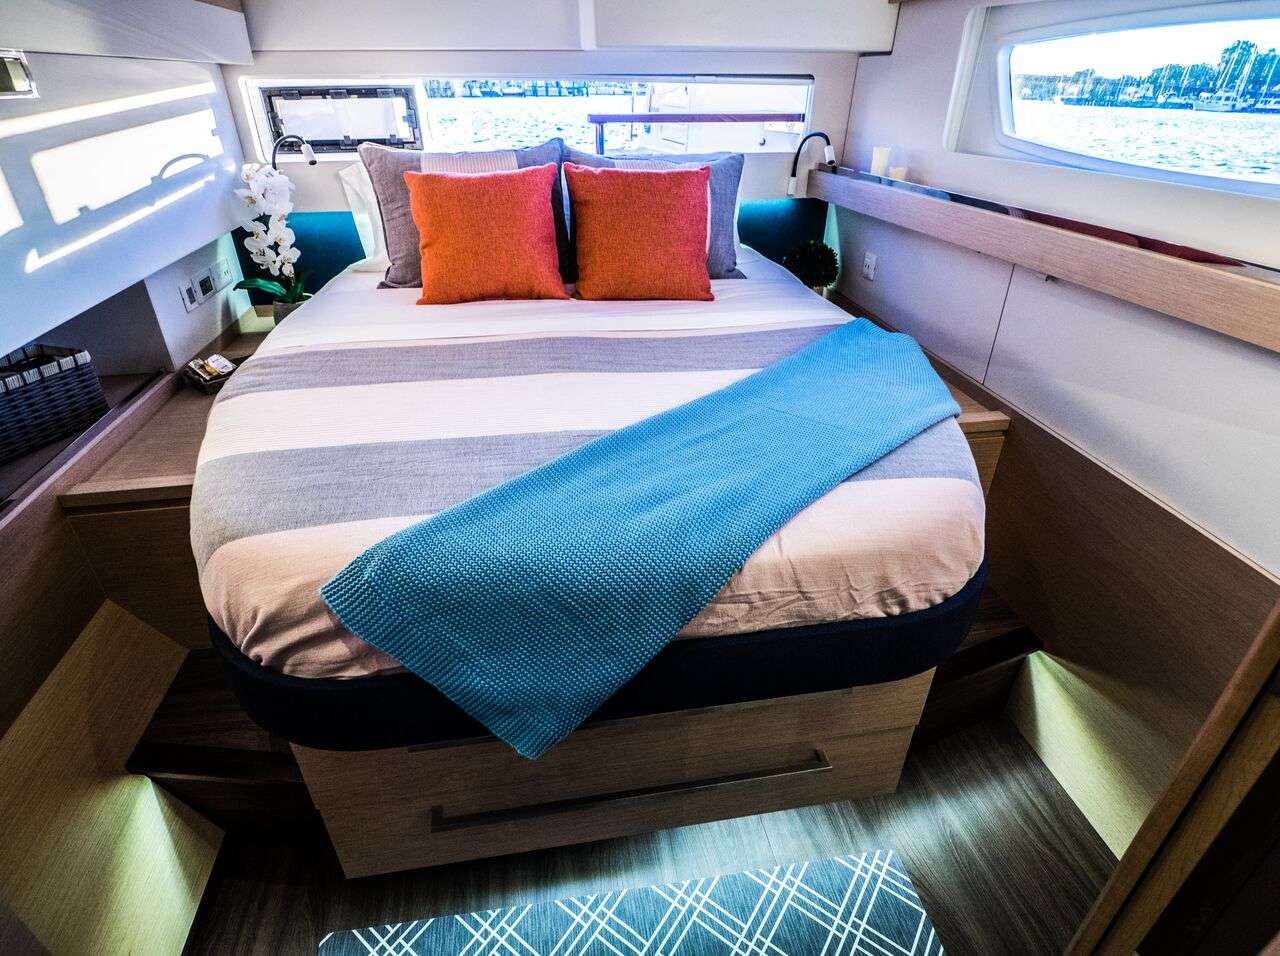 BLUE PEPPER Yacht Charter - Queen guest cabin